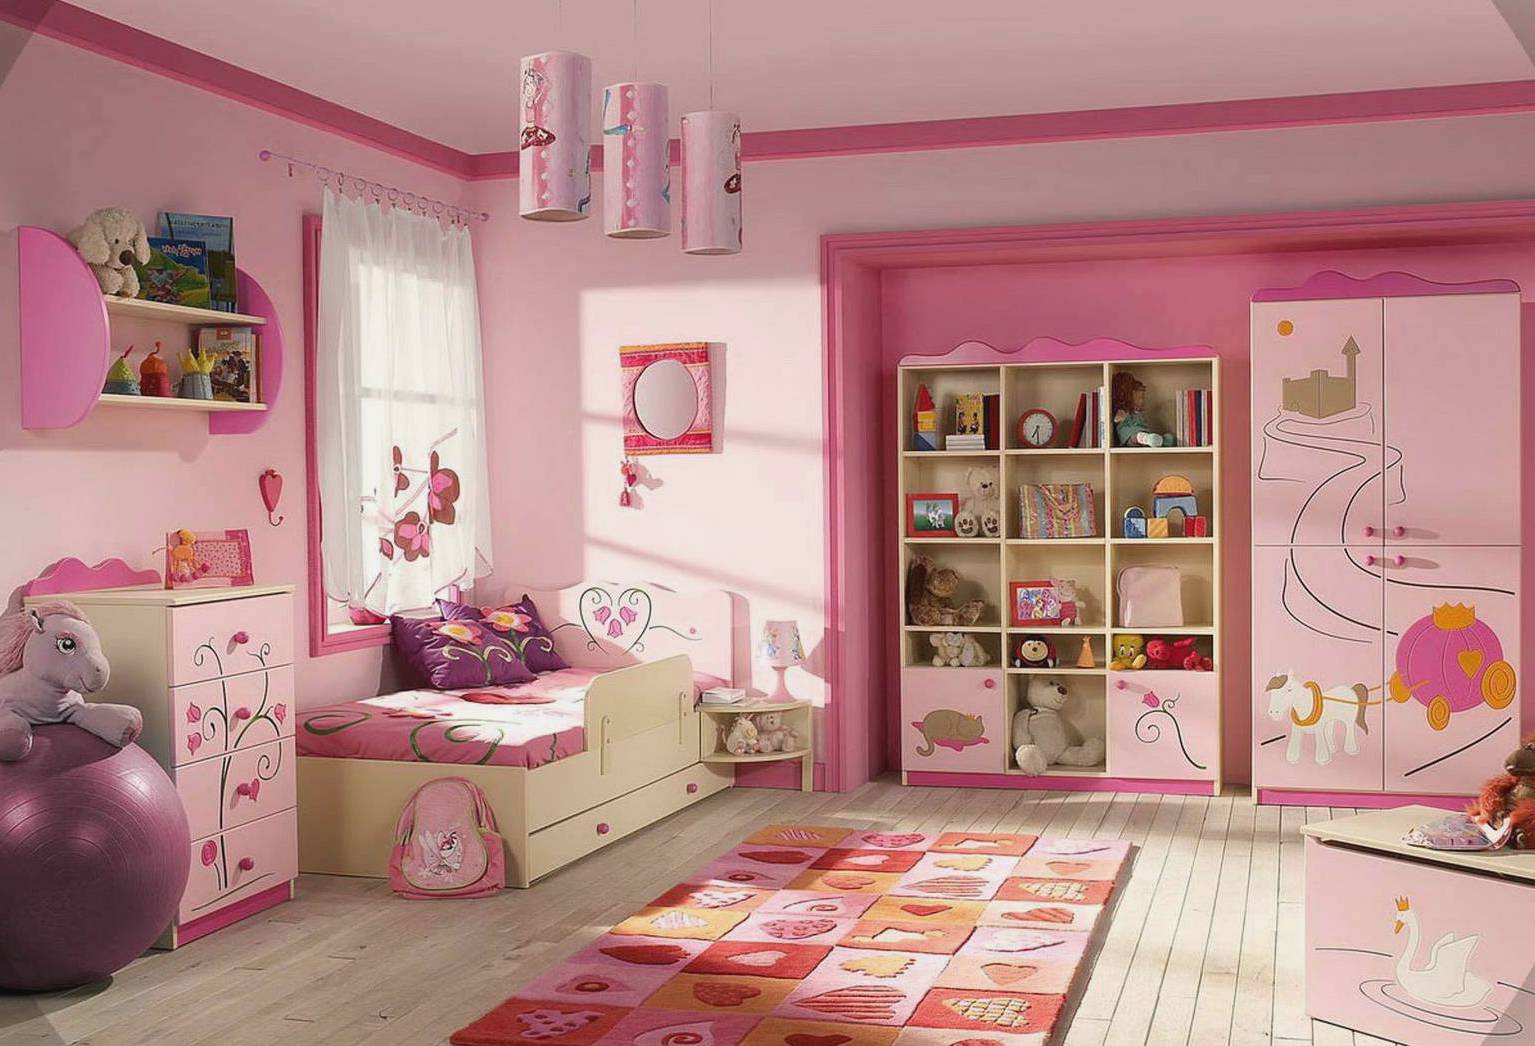 Phòng ngủ cho bé siêu đẹp bằng sơn Kova tại Hải Phòng - Ảnh 6